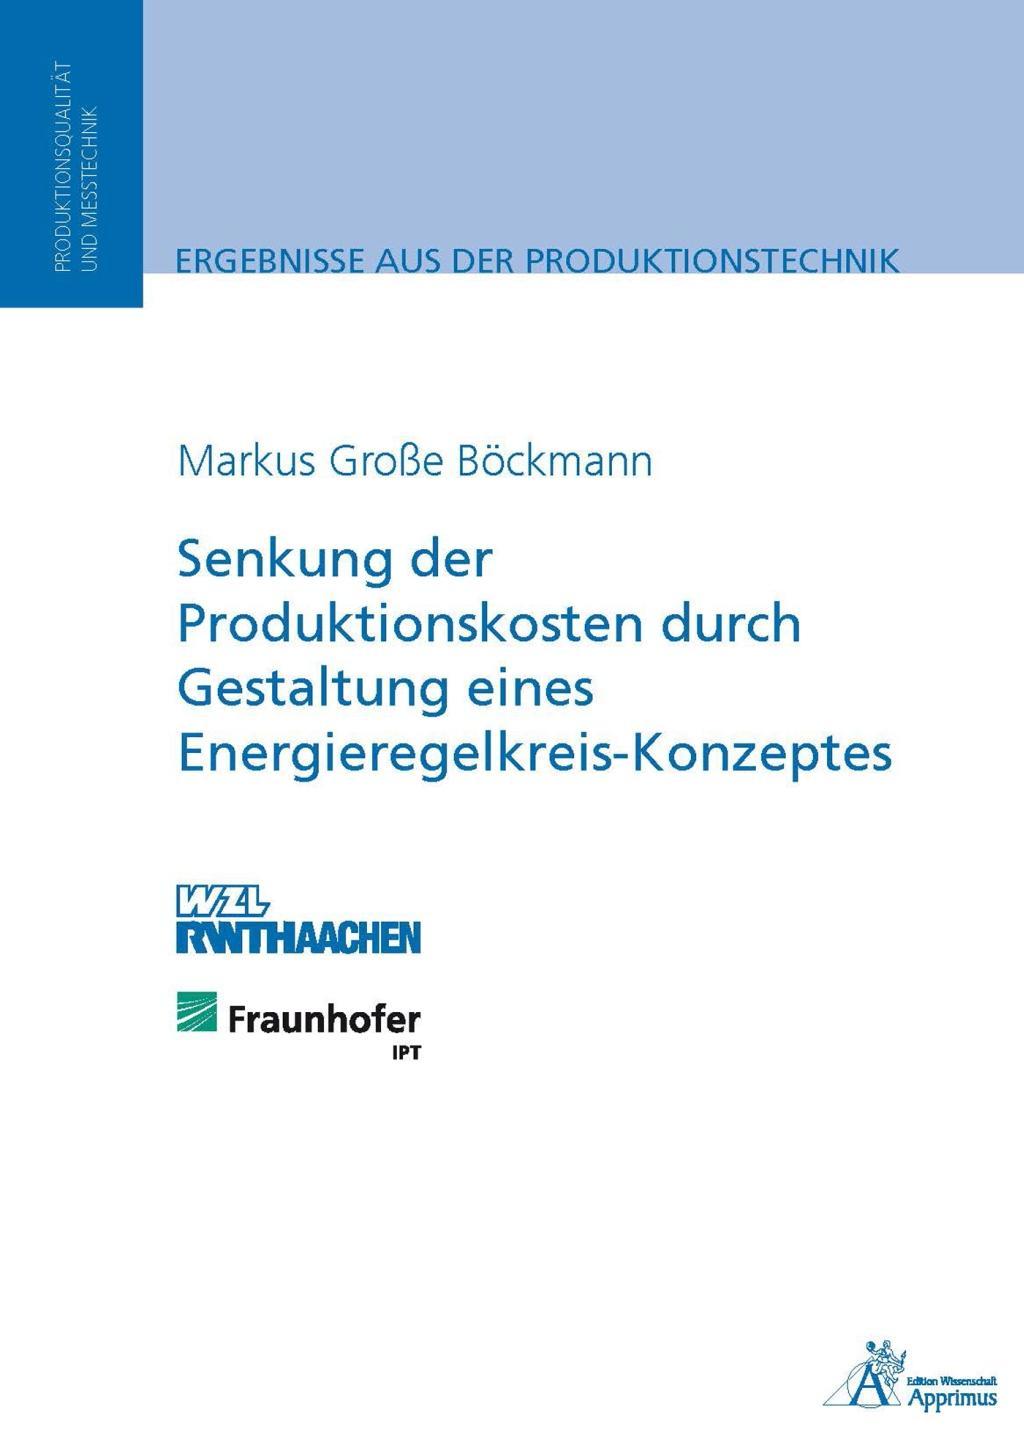 Dezentraler Koordinationsmechanismus in Wertschoepfungsnetzwerken des Maschinen- und Anlagenbaus basierend auf dem Wert von Termintreue - Jasinski, Thomas